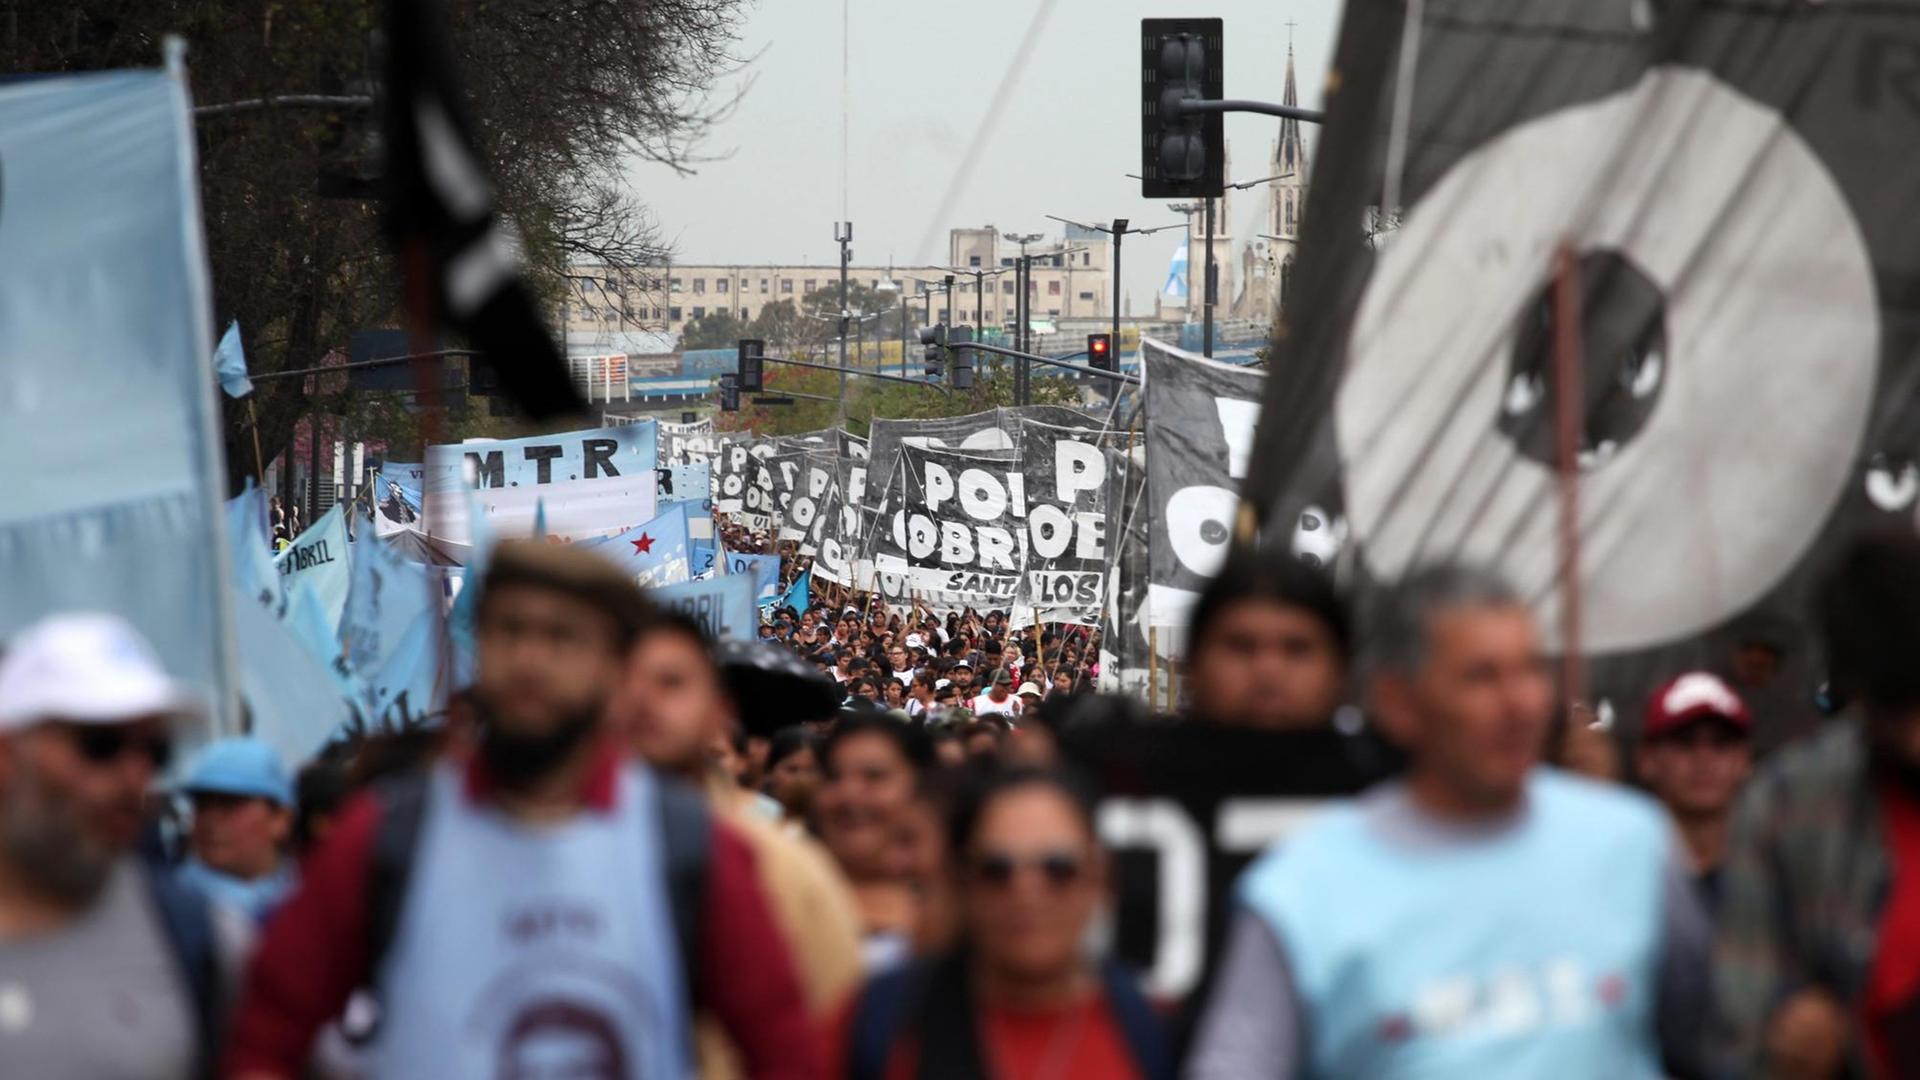 Protest gegen die Wirtschaftskrise in Argentinien in der Hauptstadt Buenos Aires am 10. Oktober. Tausende Menschen auf der Straße mit Bannern und Plakaten.